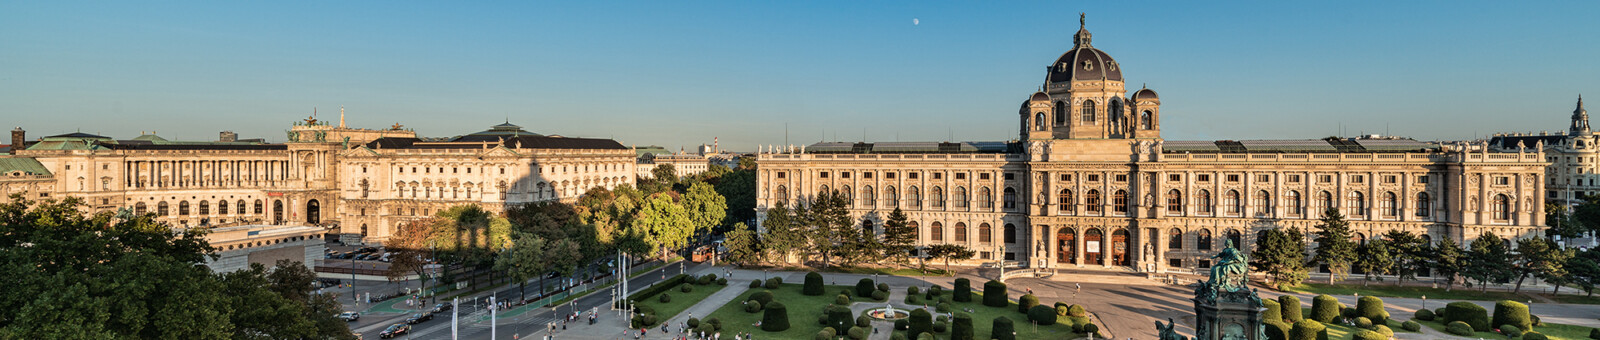     Kunsthistorisches Museum Vienna - Exterior view / Vienna